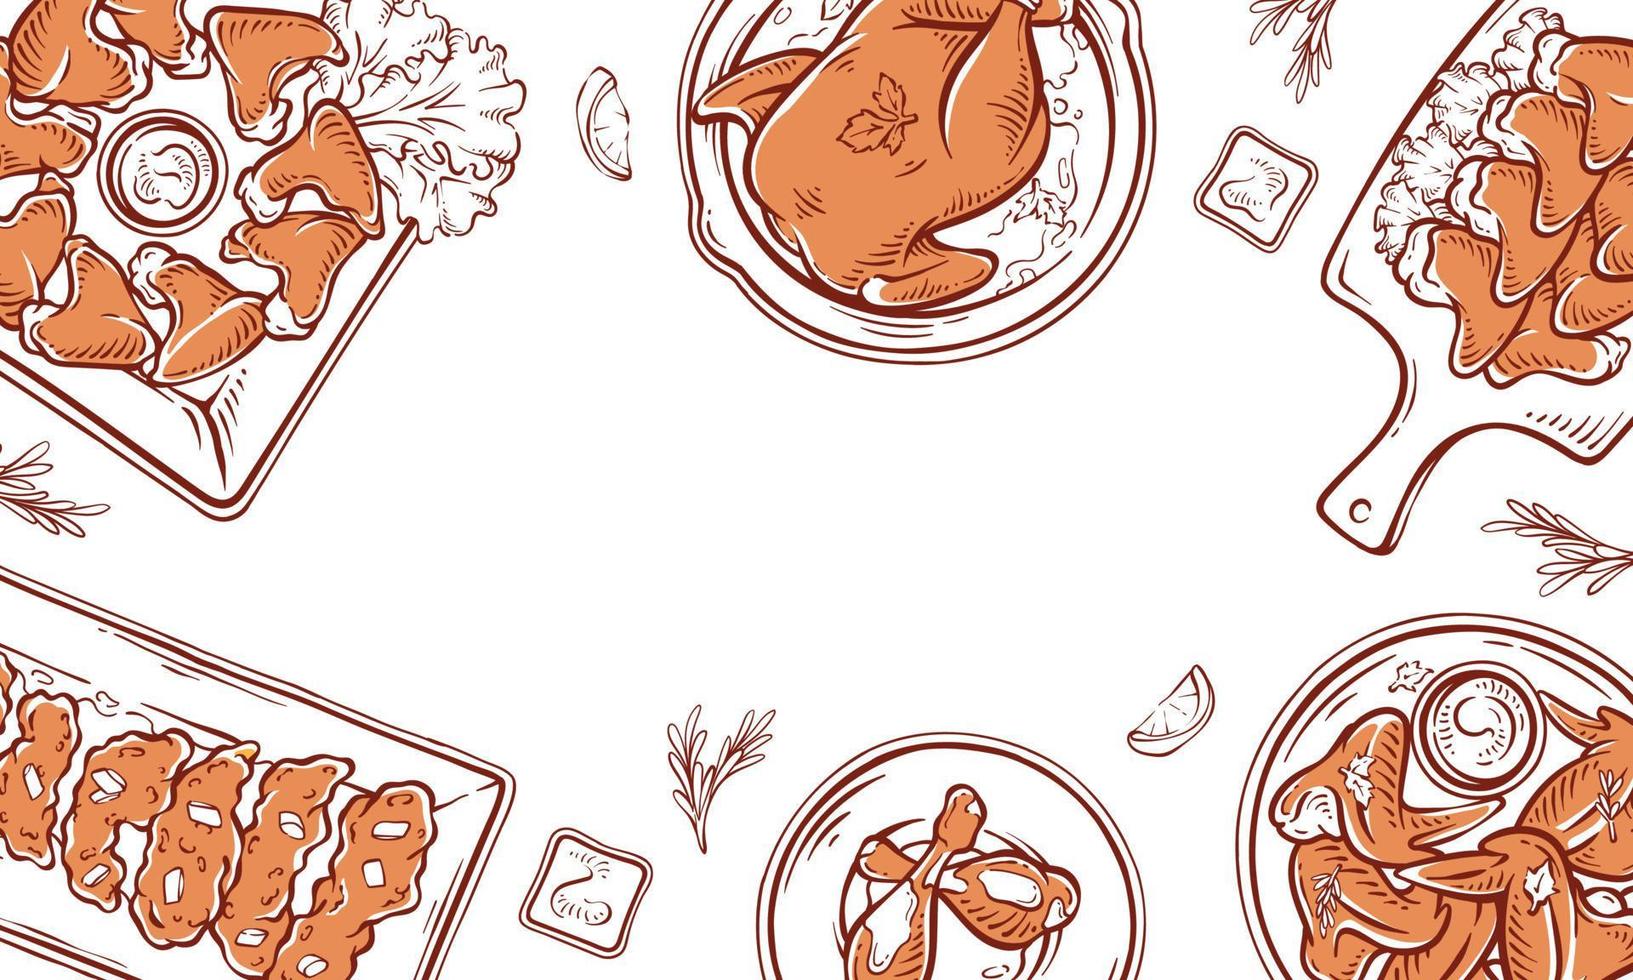 hähnchengericht restaurantmenü draufsicht hintergrundrahmen. handgezeichneter hühnerfutter-illustrationssatz. Hühnerzeichnung mit Saucen, Zitronenscheiben und Kräutervektordesign. vektor